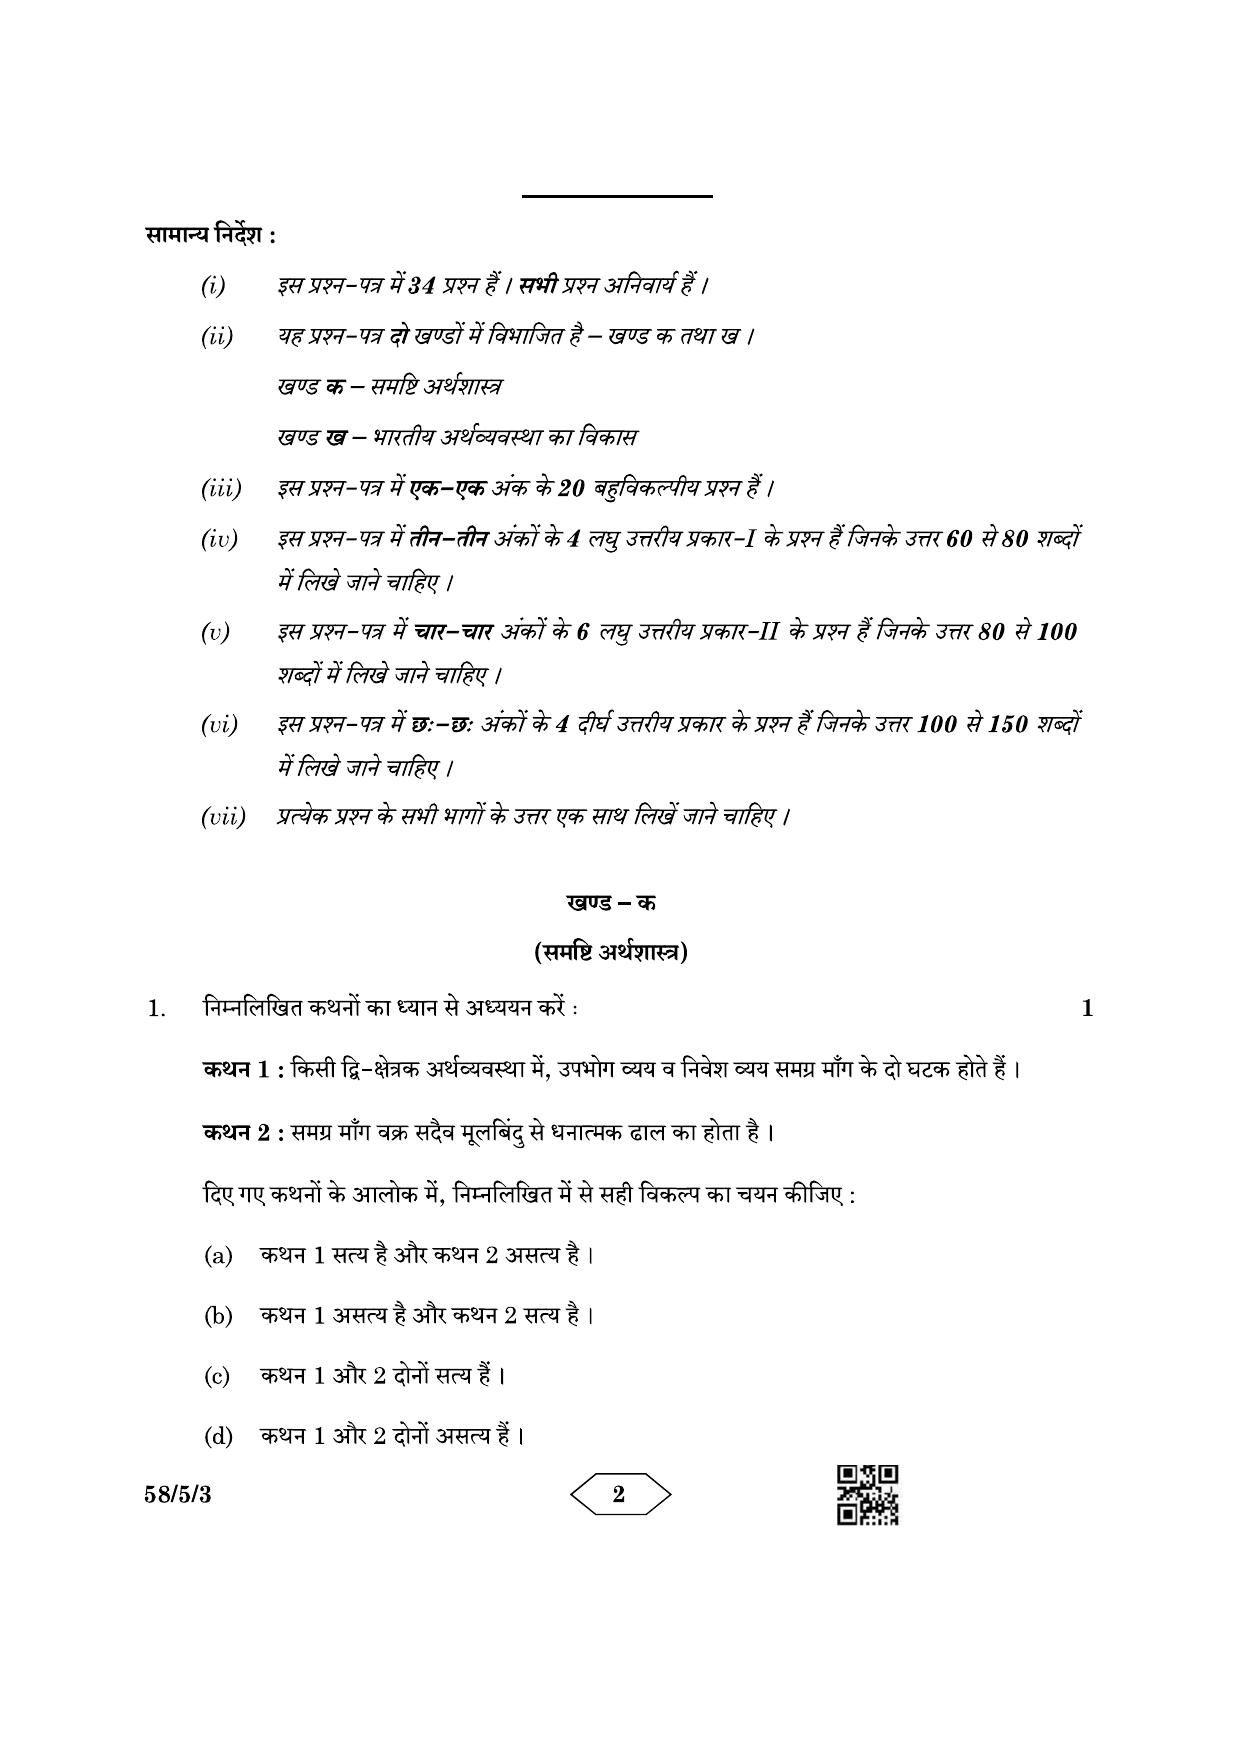 CBSE Class 12 58-5-3 Economics 2023 Question Paper - Page 2